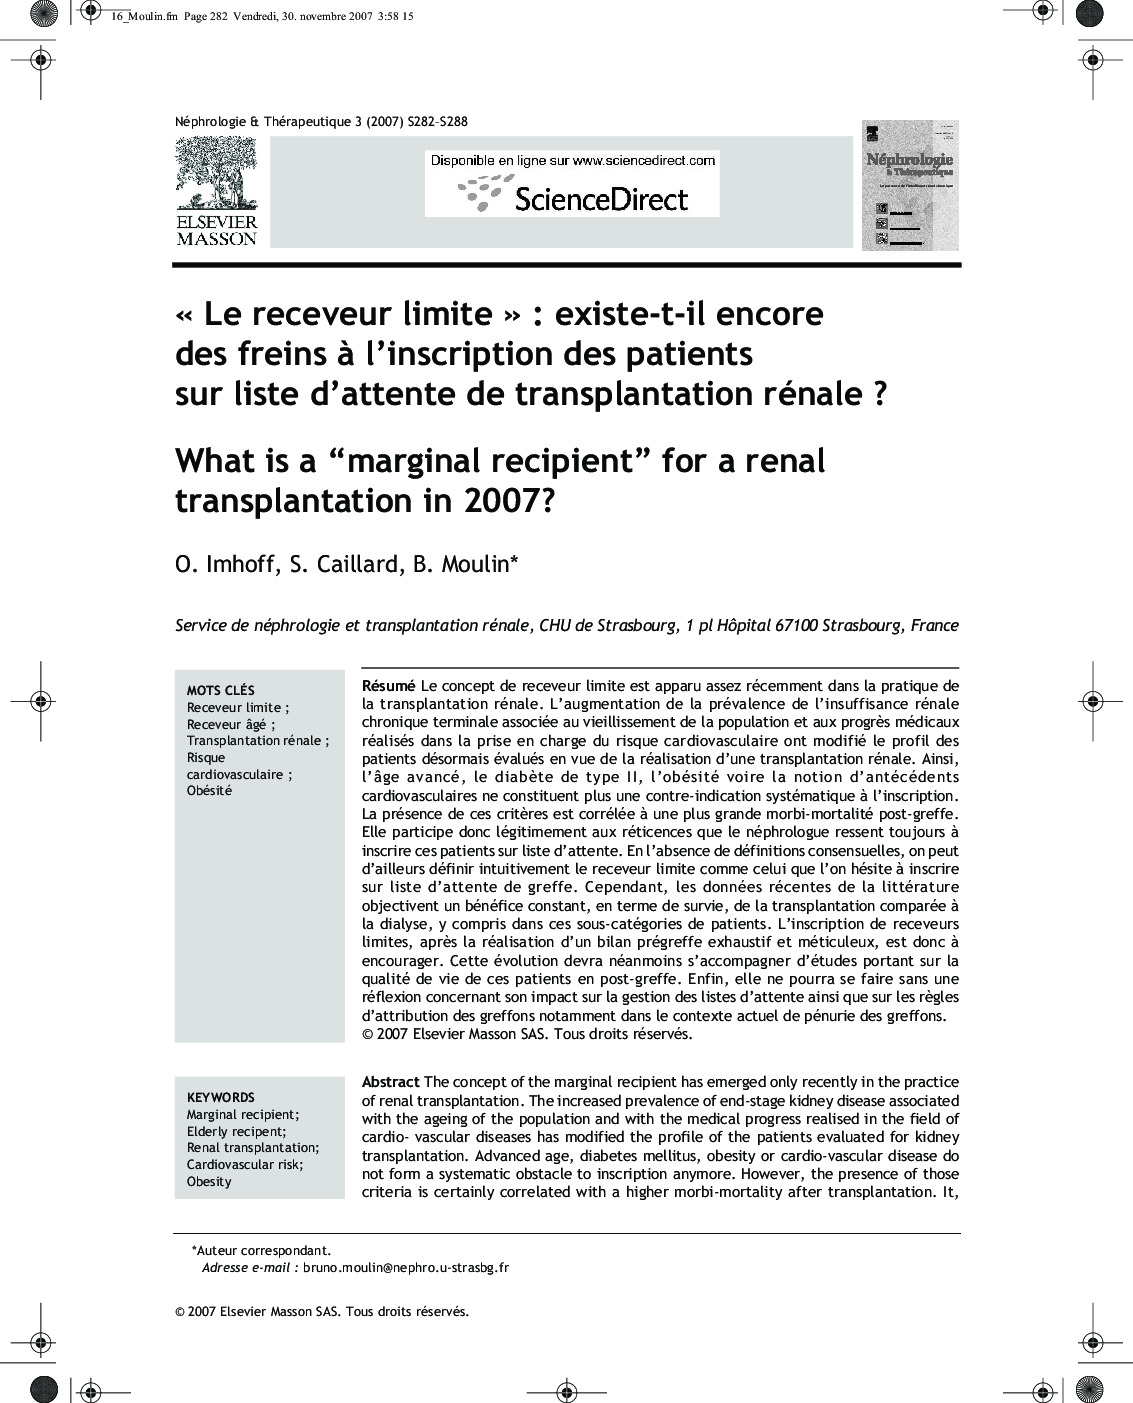 « Le receveur limite » : existe-t-il encore des freins à l’inscription des patients sur liste d’attente de transplantation rénale ?